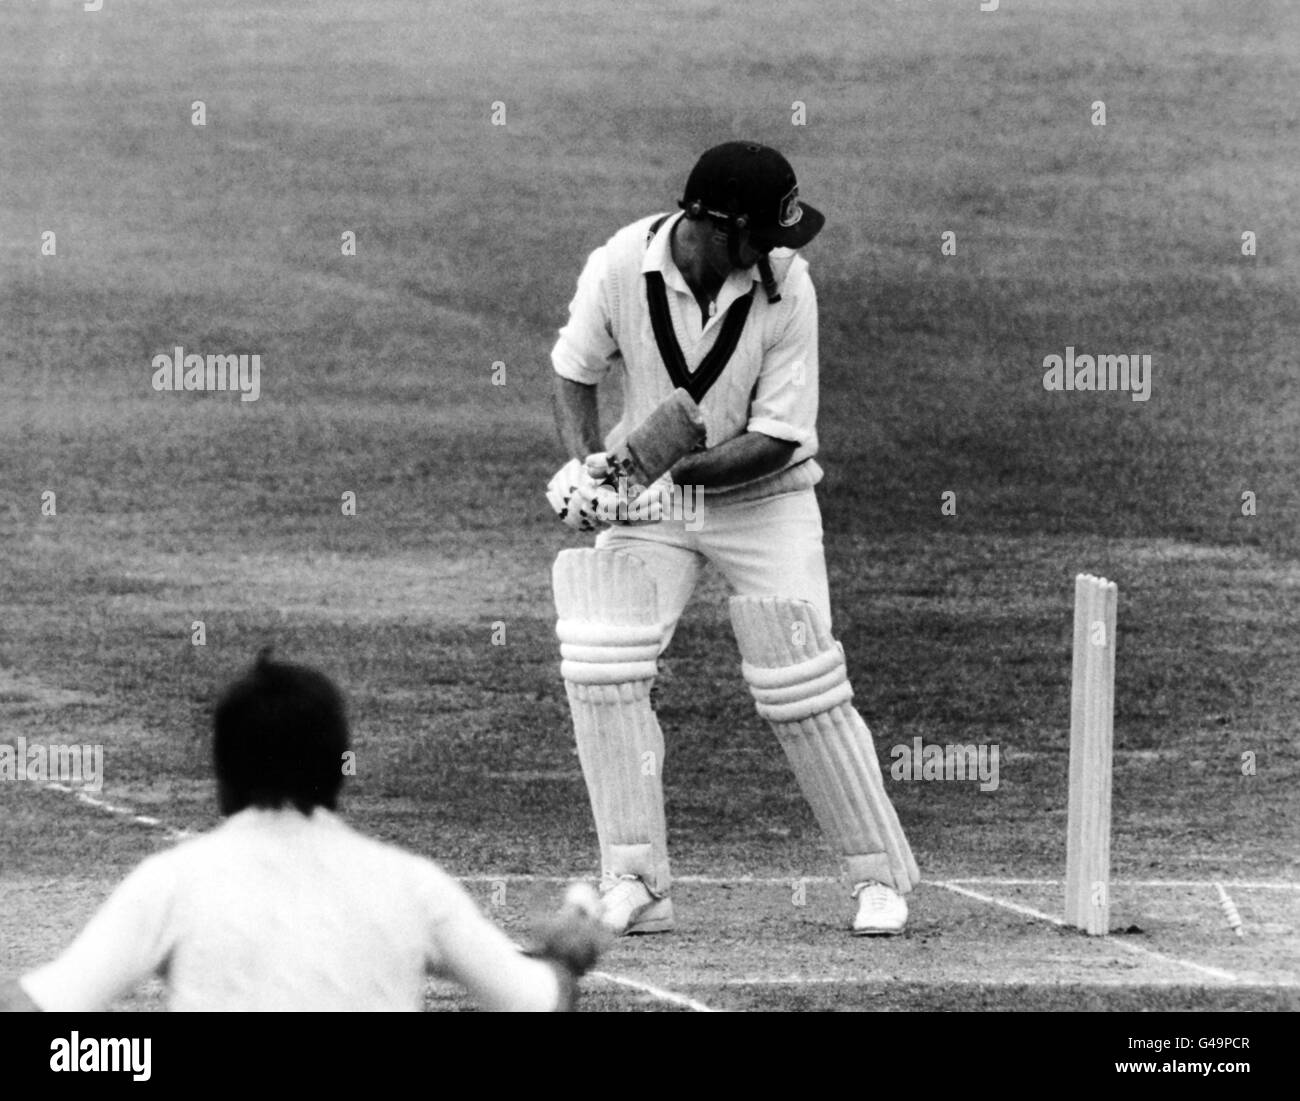 Cricket - The Ashes - seconda prova - Inghilterra / Australia - terza giornata - Lord's. Graham Yallop (Australia) si ritrova invisolato per uno da Graham Dilley Foto Stock